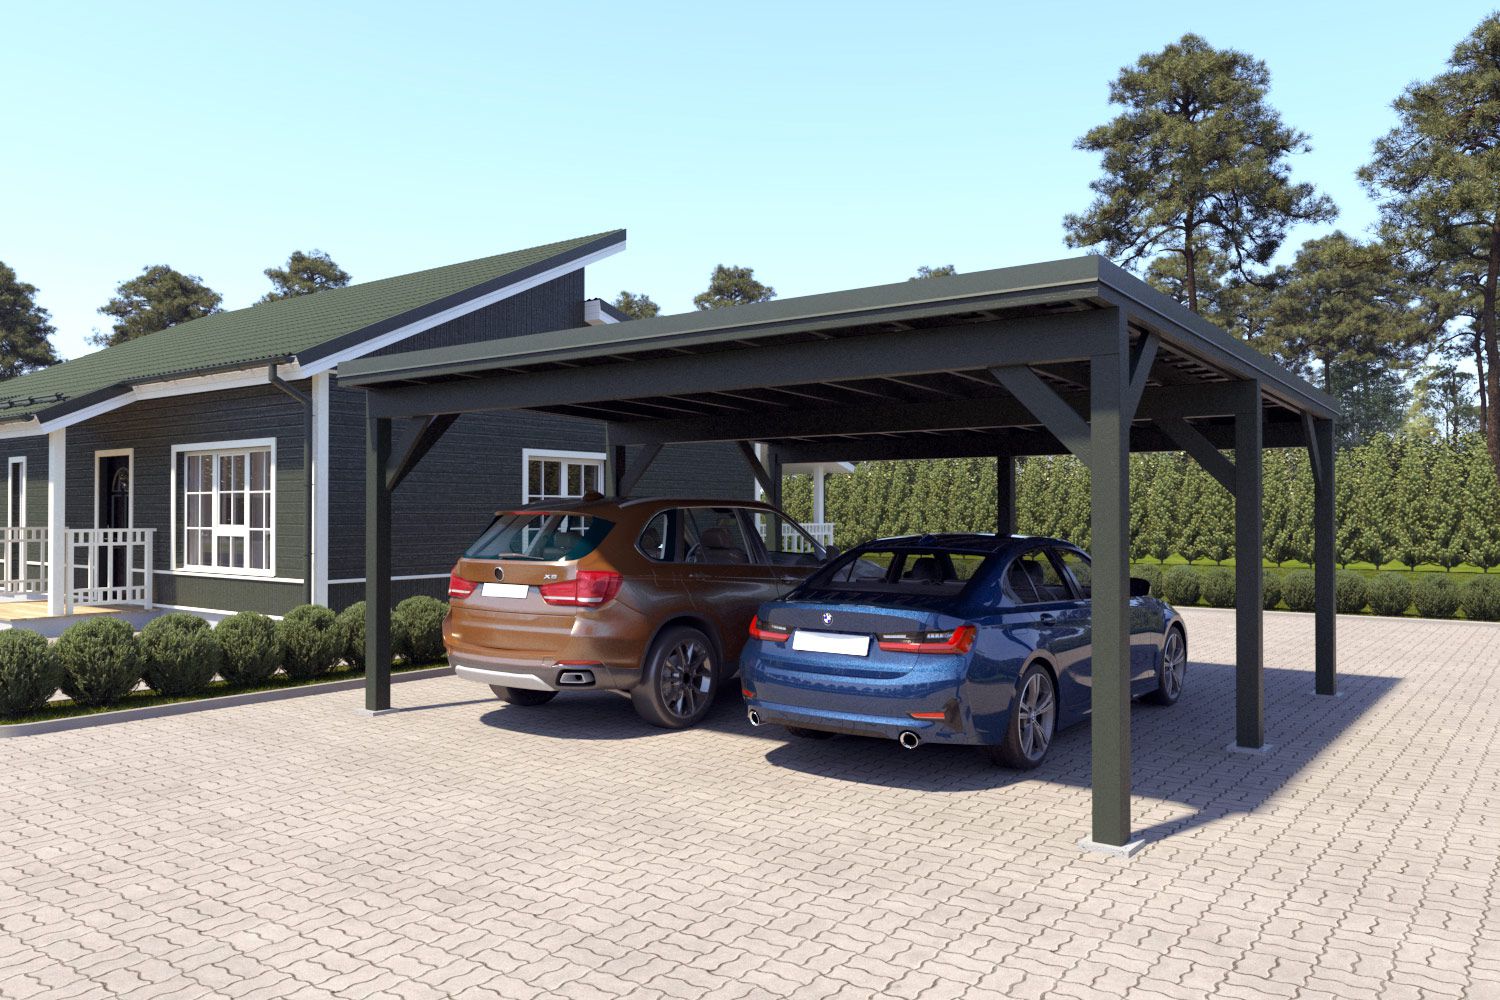 Dubbele carport "Stable" 6 x 6 m (LxB) / 250 kg/m² dak belasting / 36 m² / Chroomoxidegroen met doorngroen dak